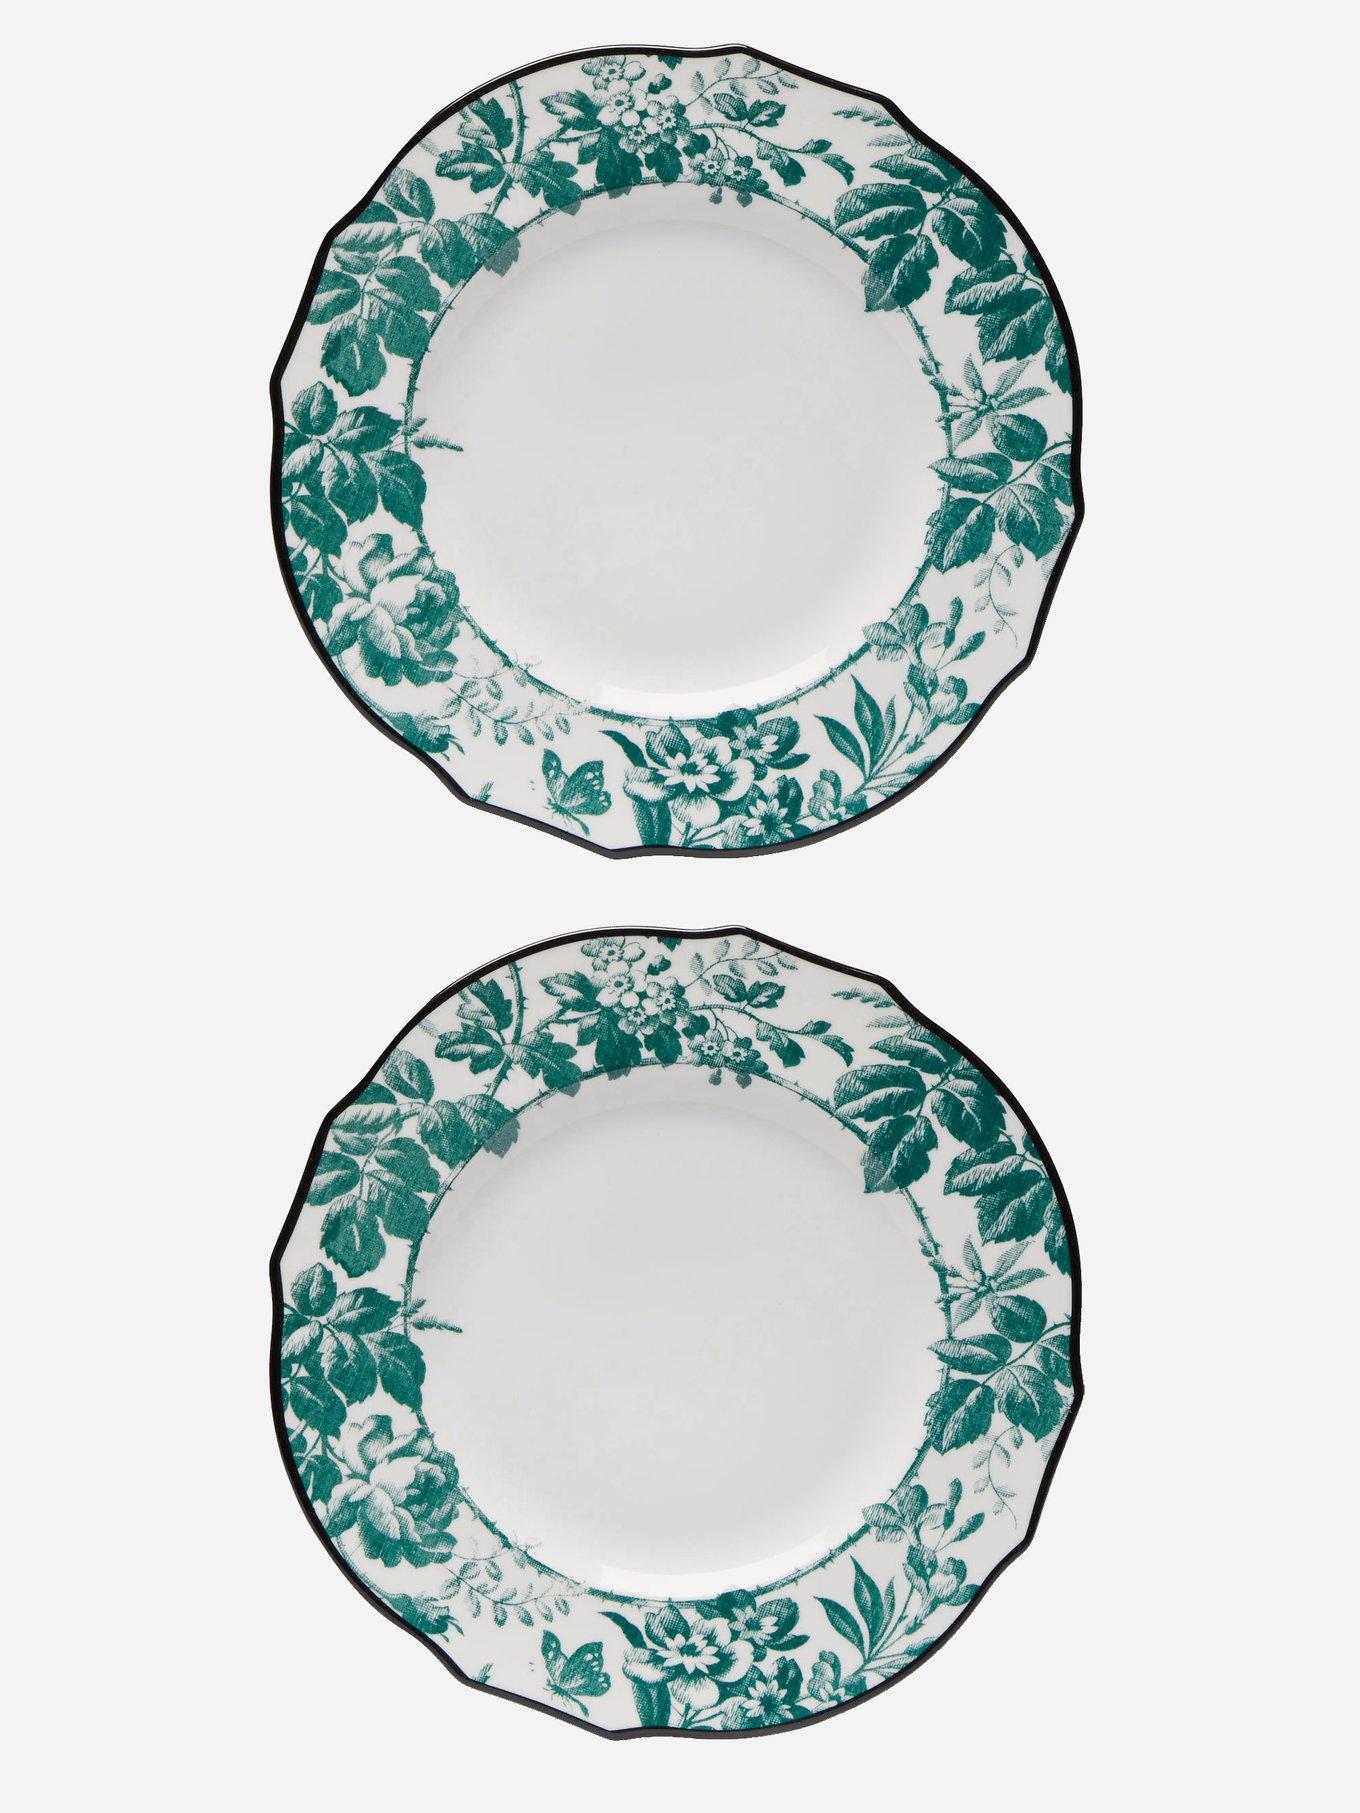 gucci plates